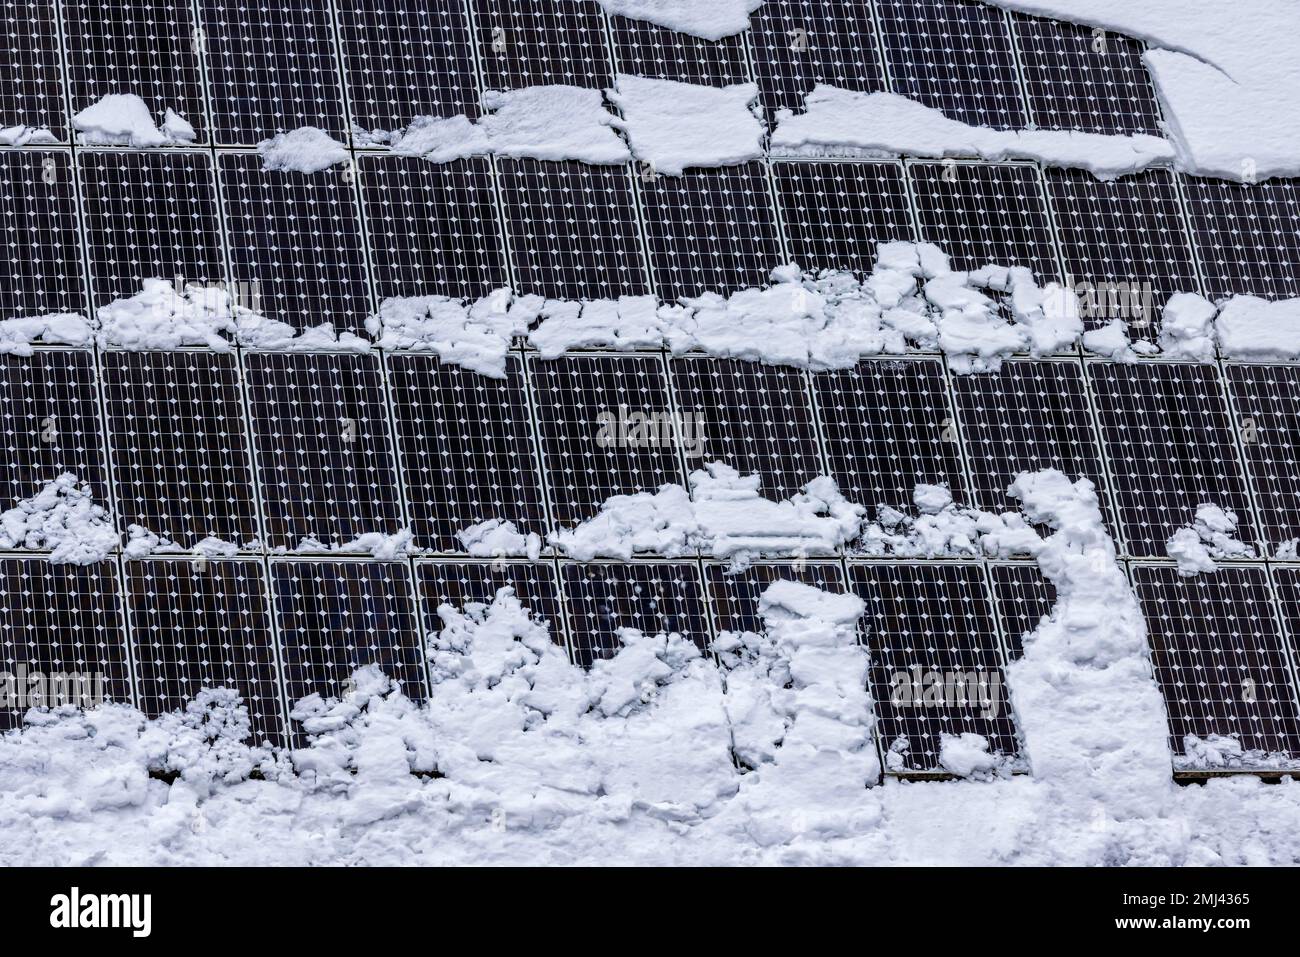 Colectores solares en un techo cubierto de nieve, Merklingen, Baden-Wuerttemberg, Alemania Foto de stock